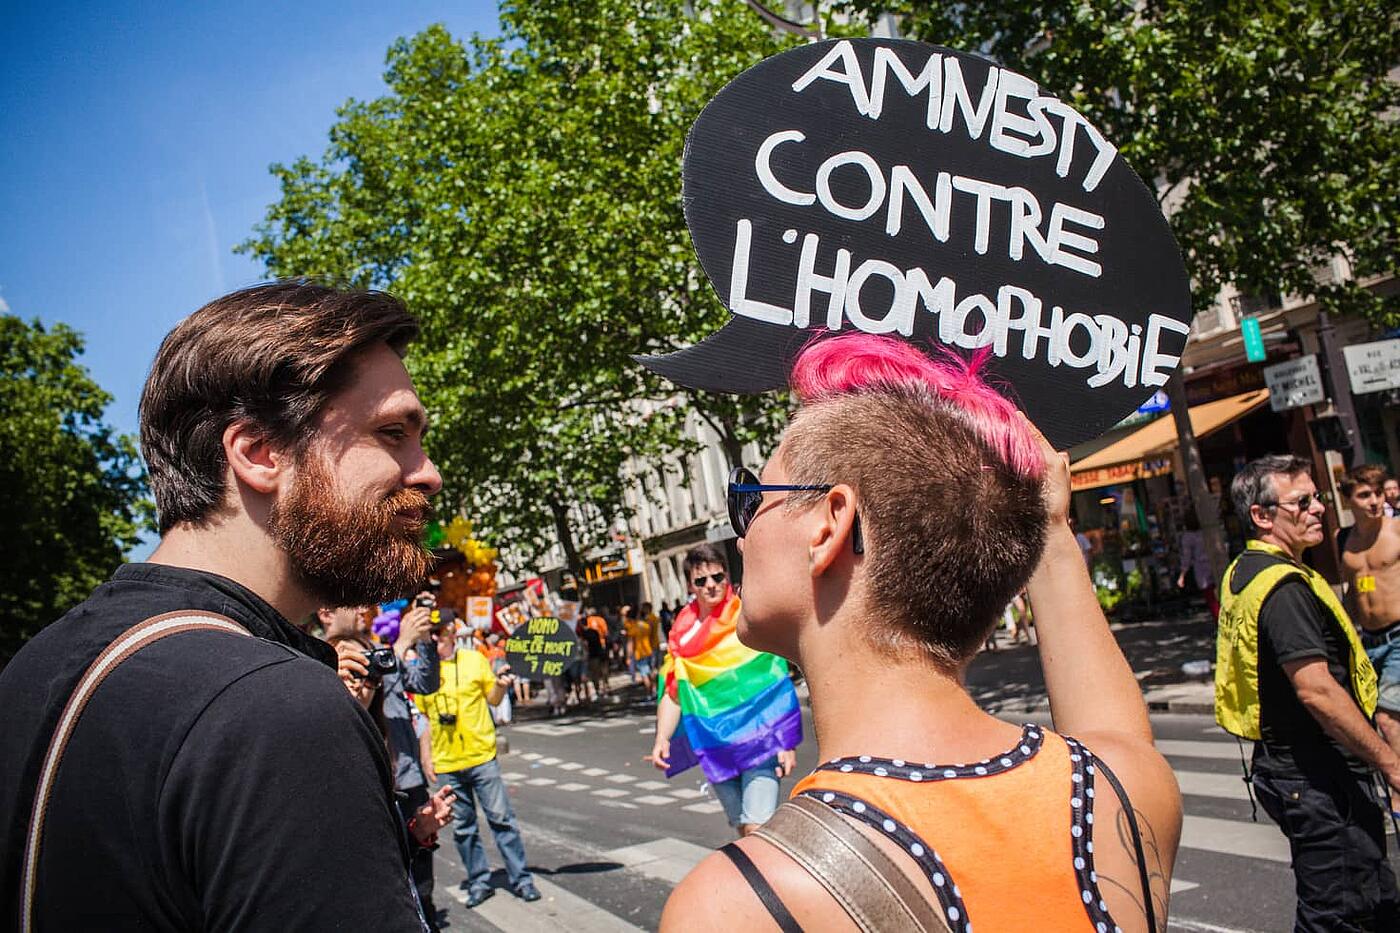 Dos personas en la Marcha del Orgullo en París portan una pancarta que pone "Amnesty contre l'homophobie"